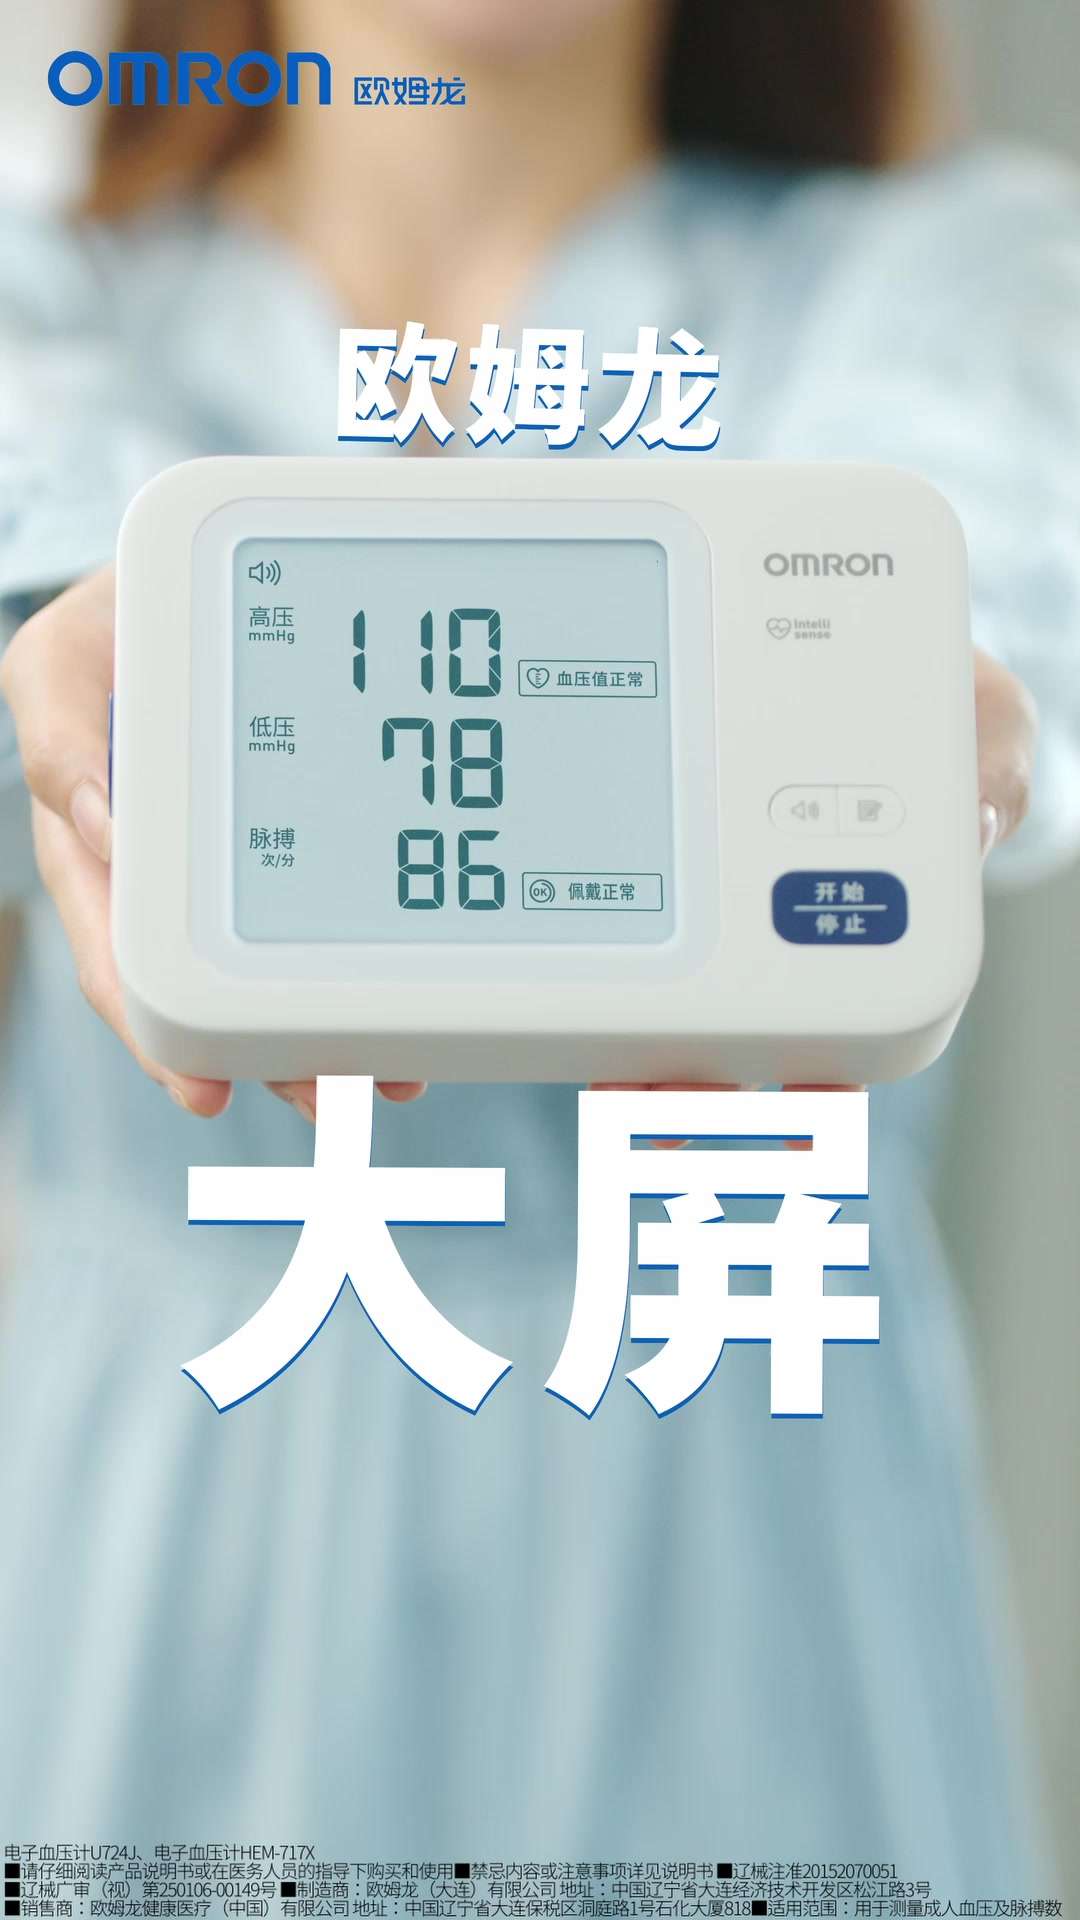 「欧姆龙」血压计 电梯广告 魔性 洗脑